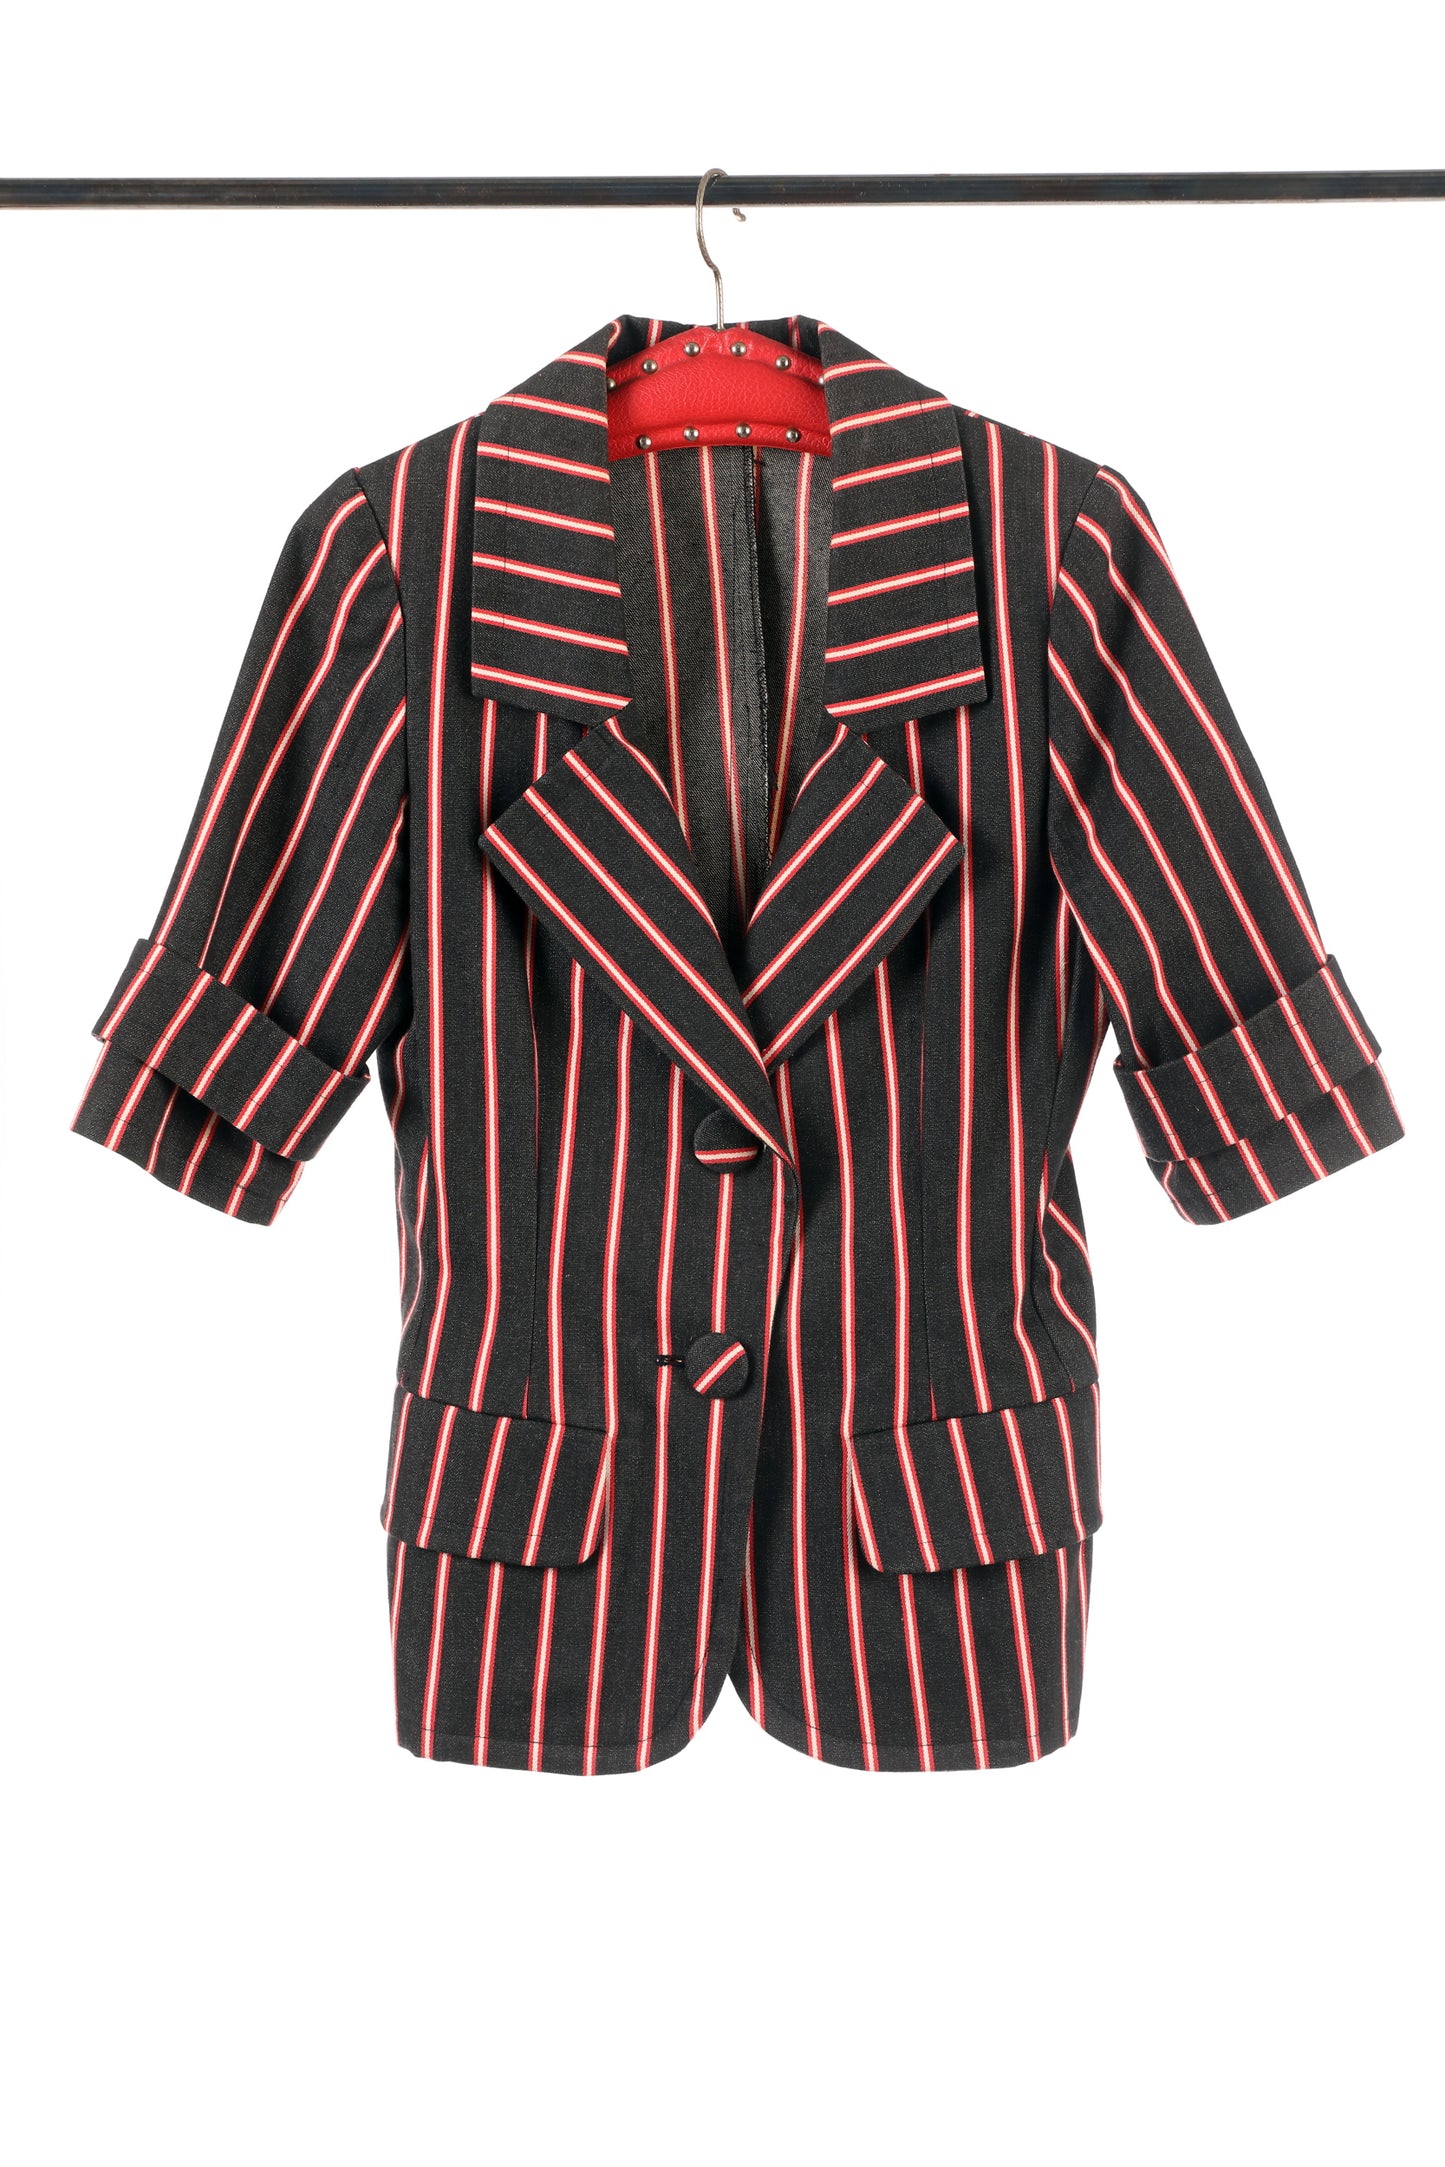 Saint Laurent suit from the 80s